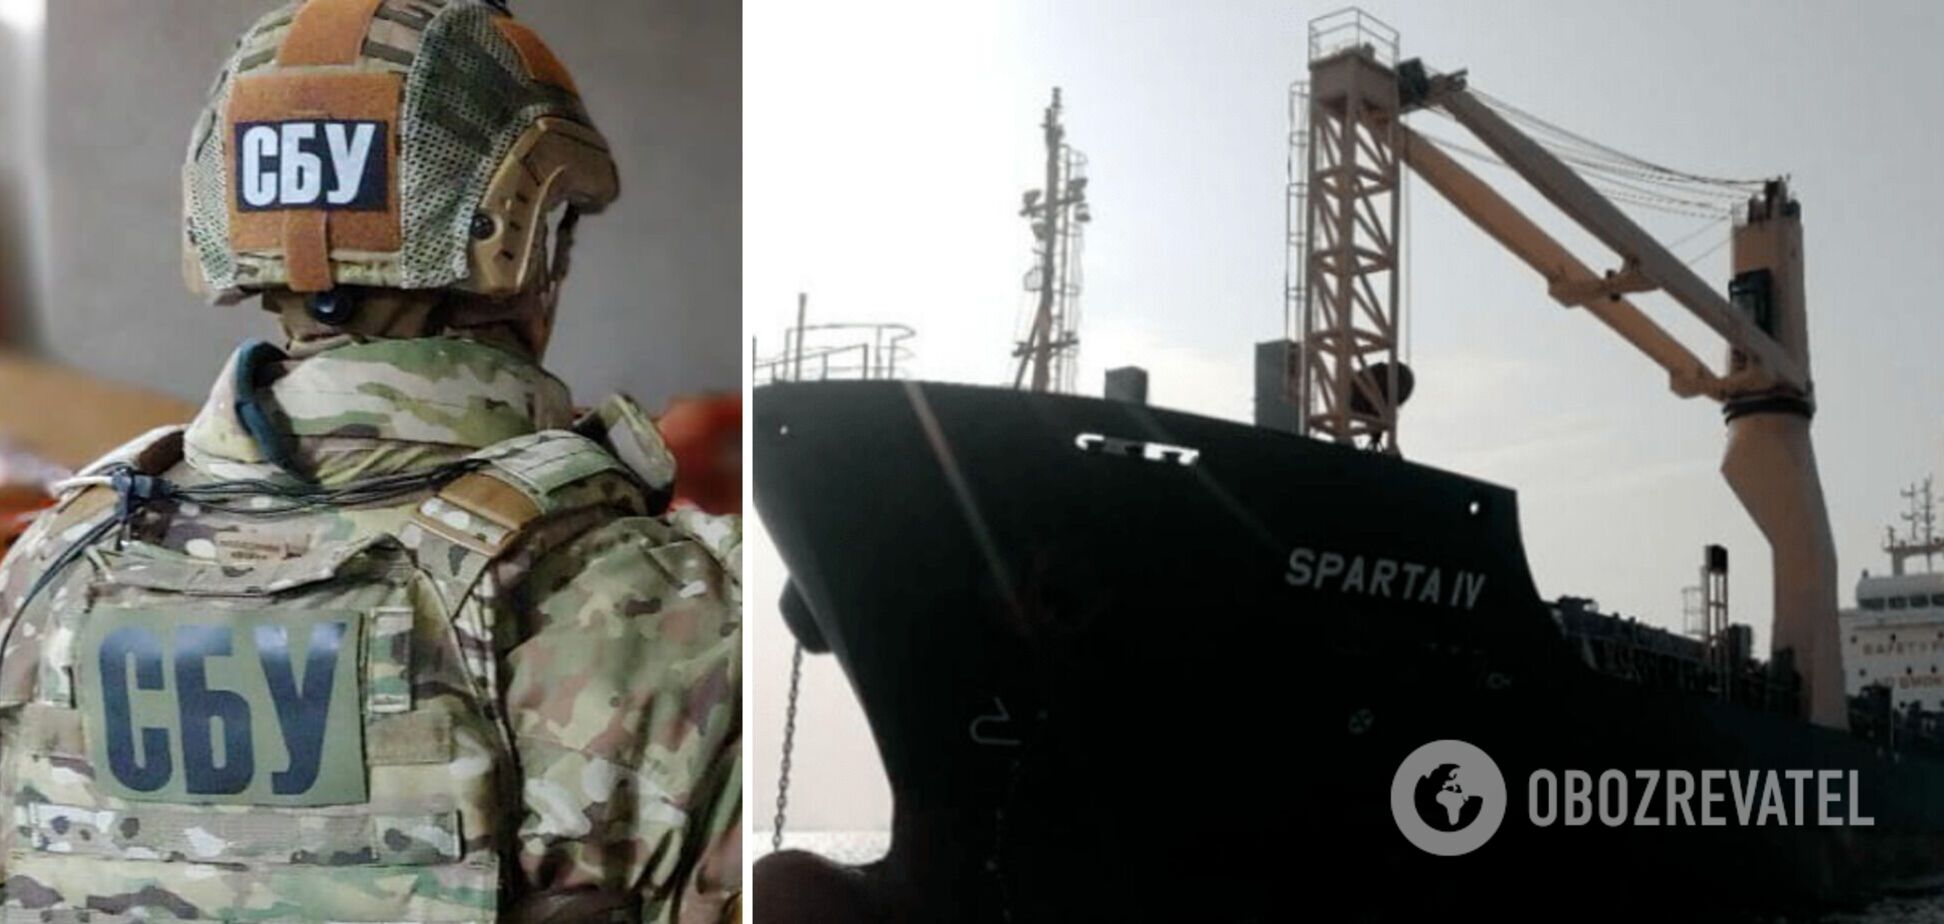 СБУ сообщила о подозрении капитану российского судна, привезшего в Украину военную технику из Сирии